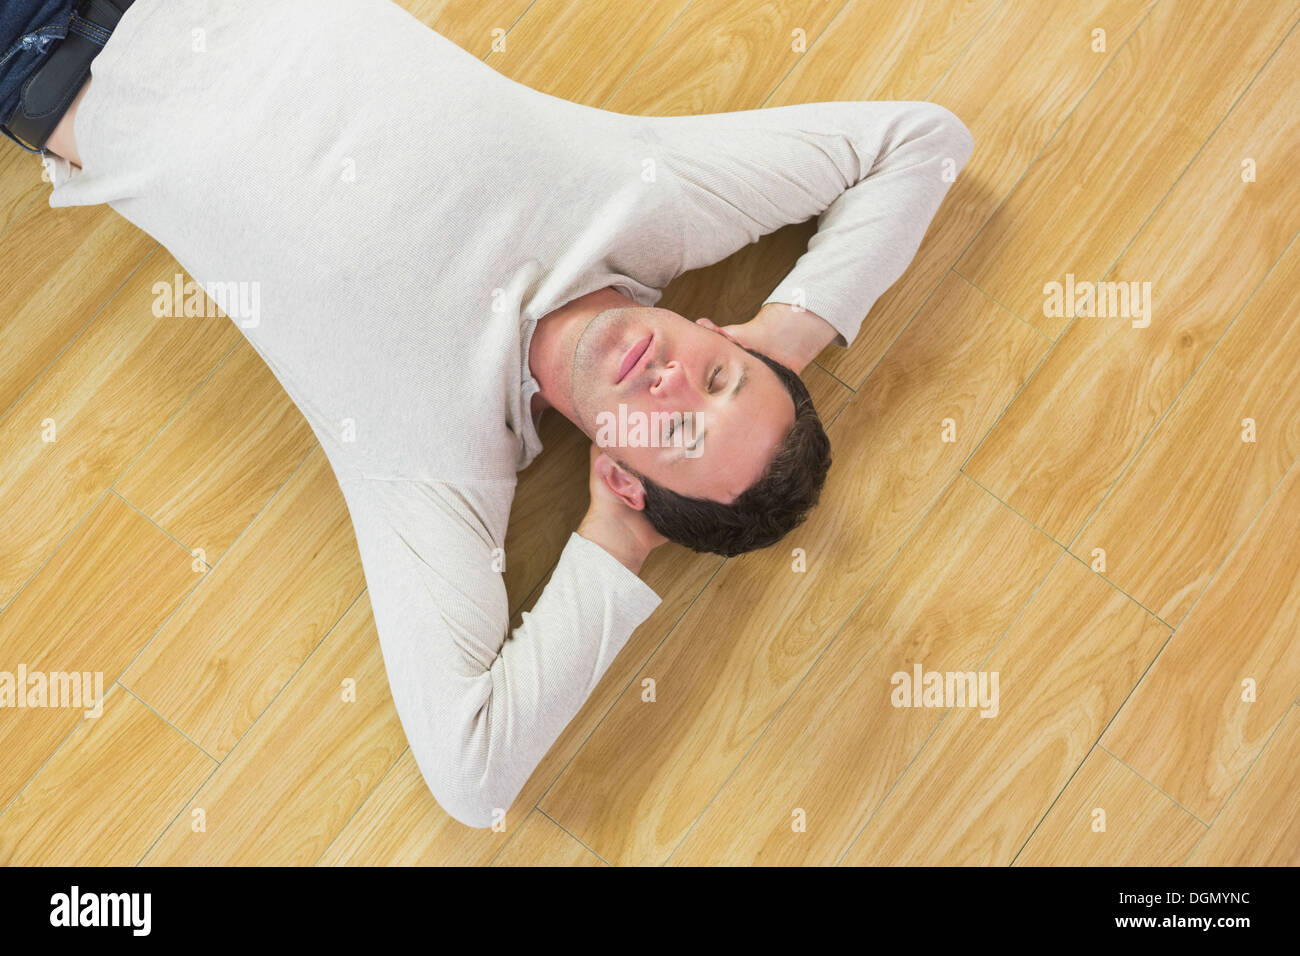 Legerer ruhig Mann am Boden liegend, mit geschlossenen Augen Stockfoto